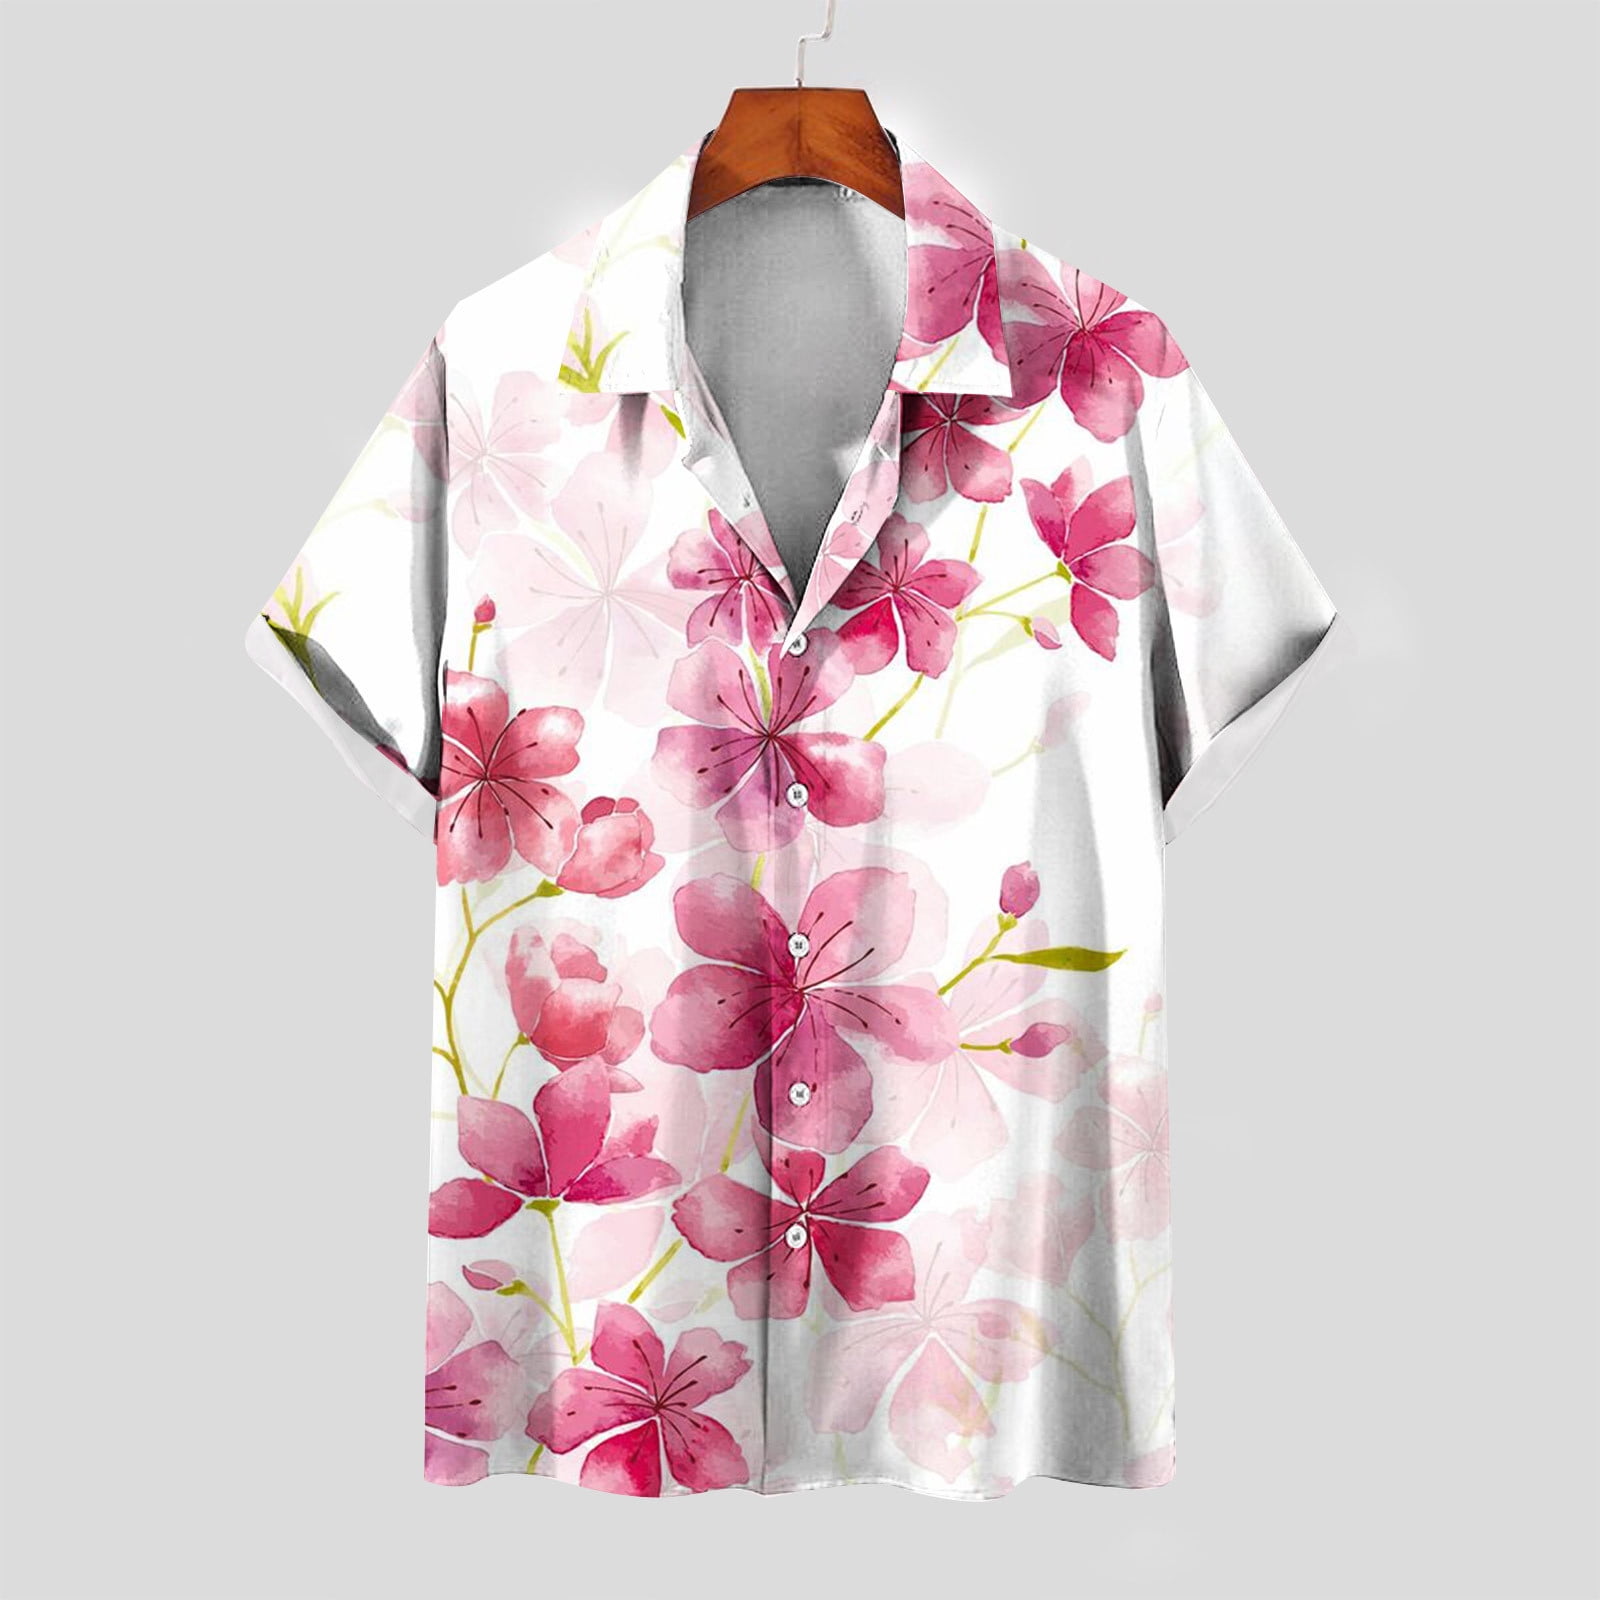 sprezzmensco Bird Print Slim Fit Shirt | Short Sleeve Button Up Shirt | Hawaiian Shirt | Party Shirt | Boyfriend Gift | Vacation Shirt | Casual Shirt